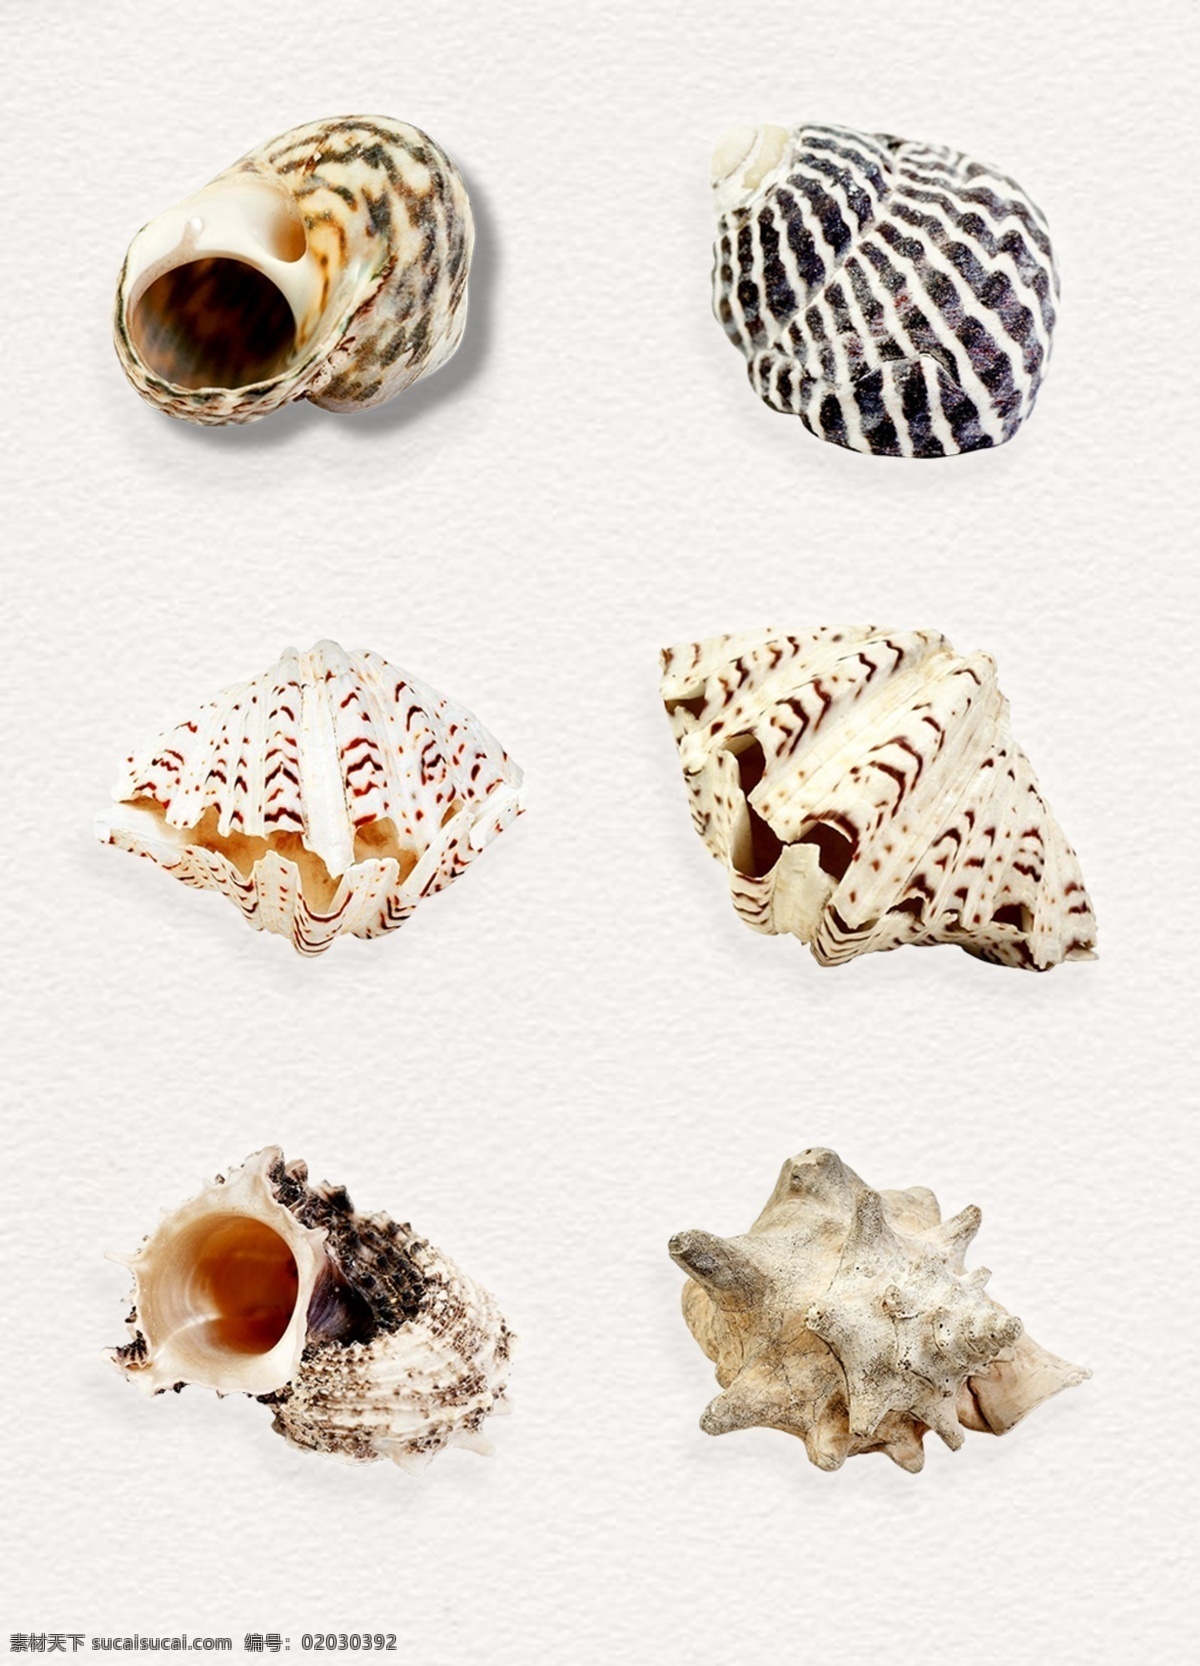 海洋 海螺 生物 浅色 工艺品 精美 软体动物 海产品